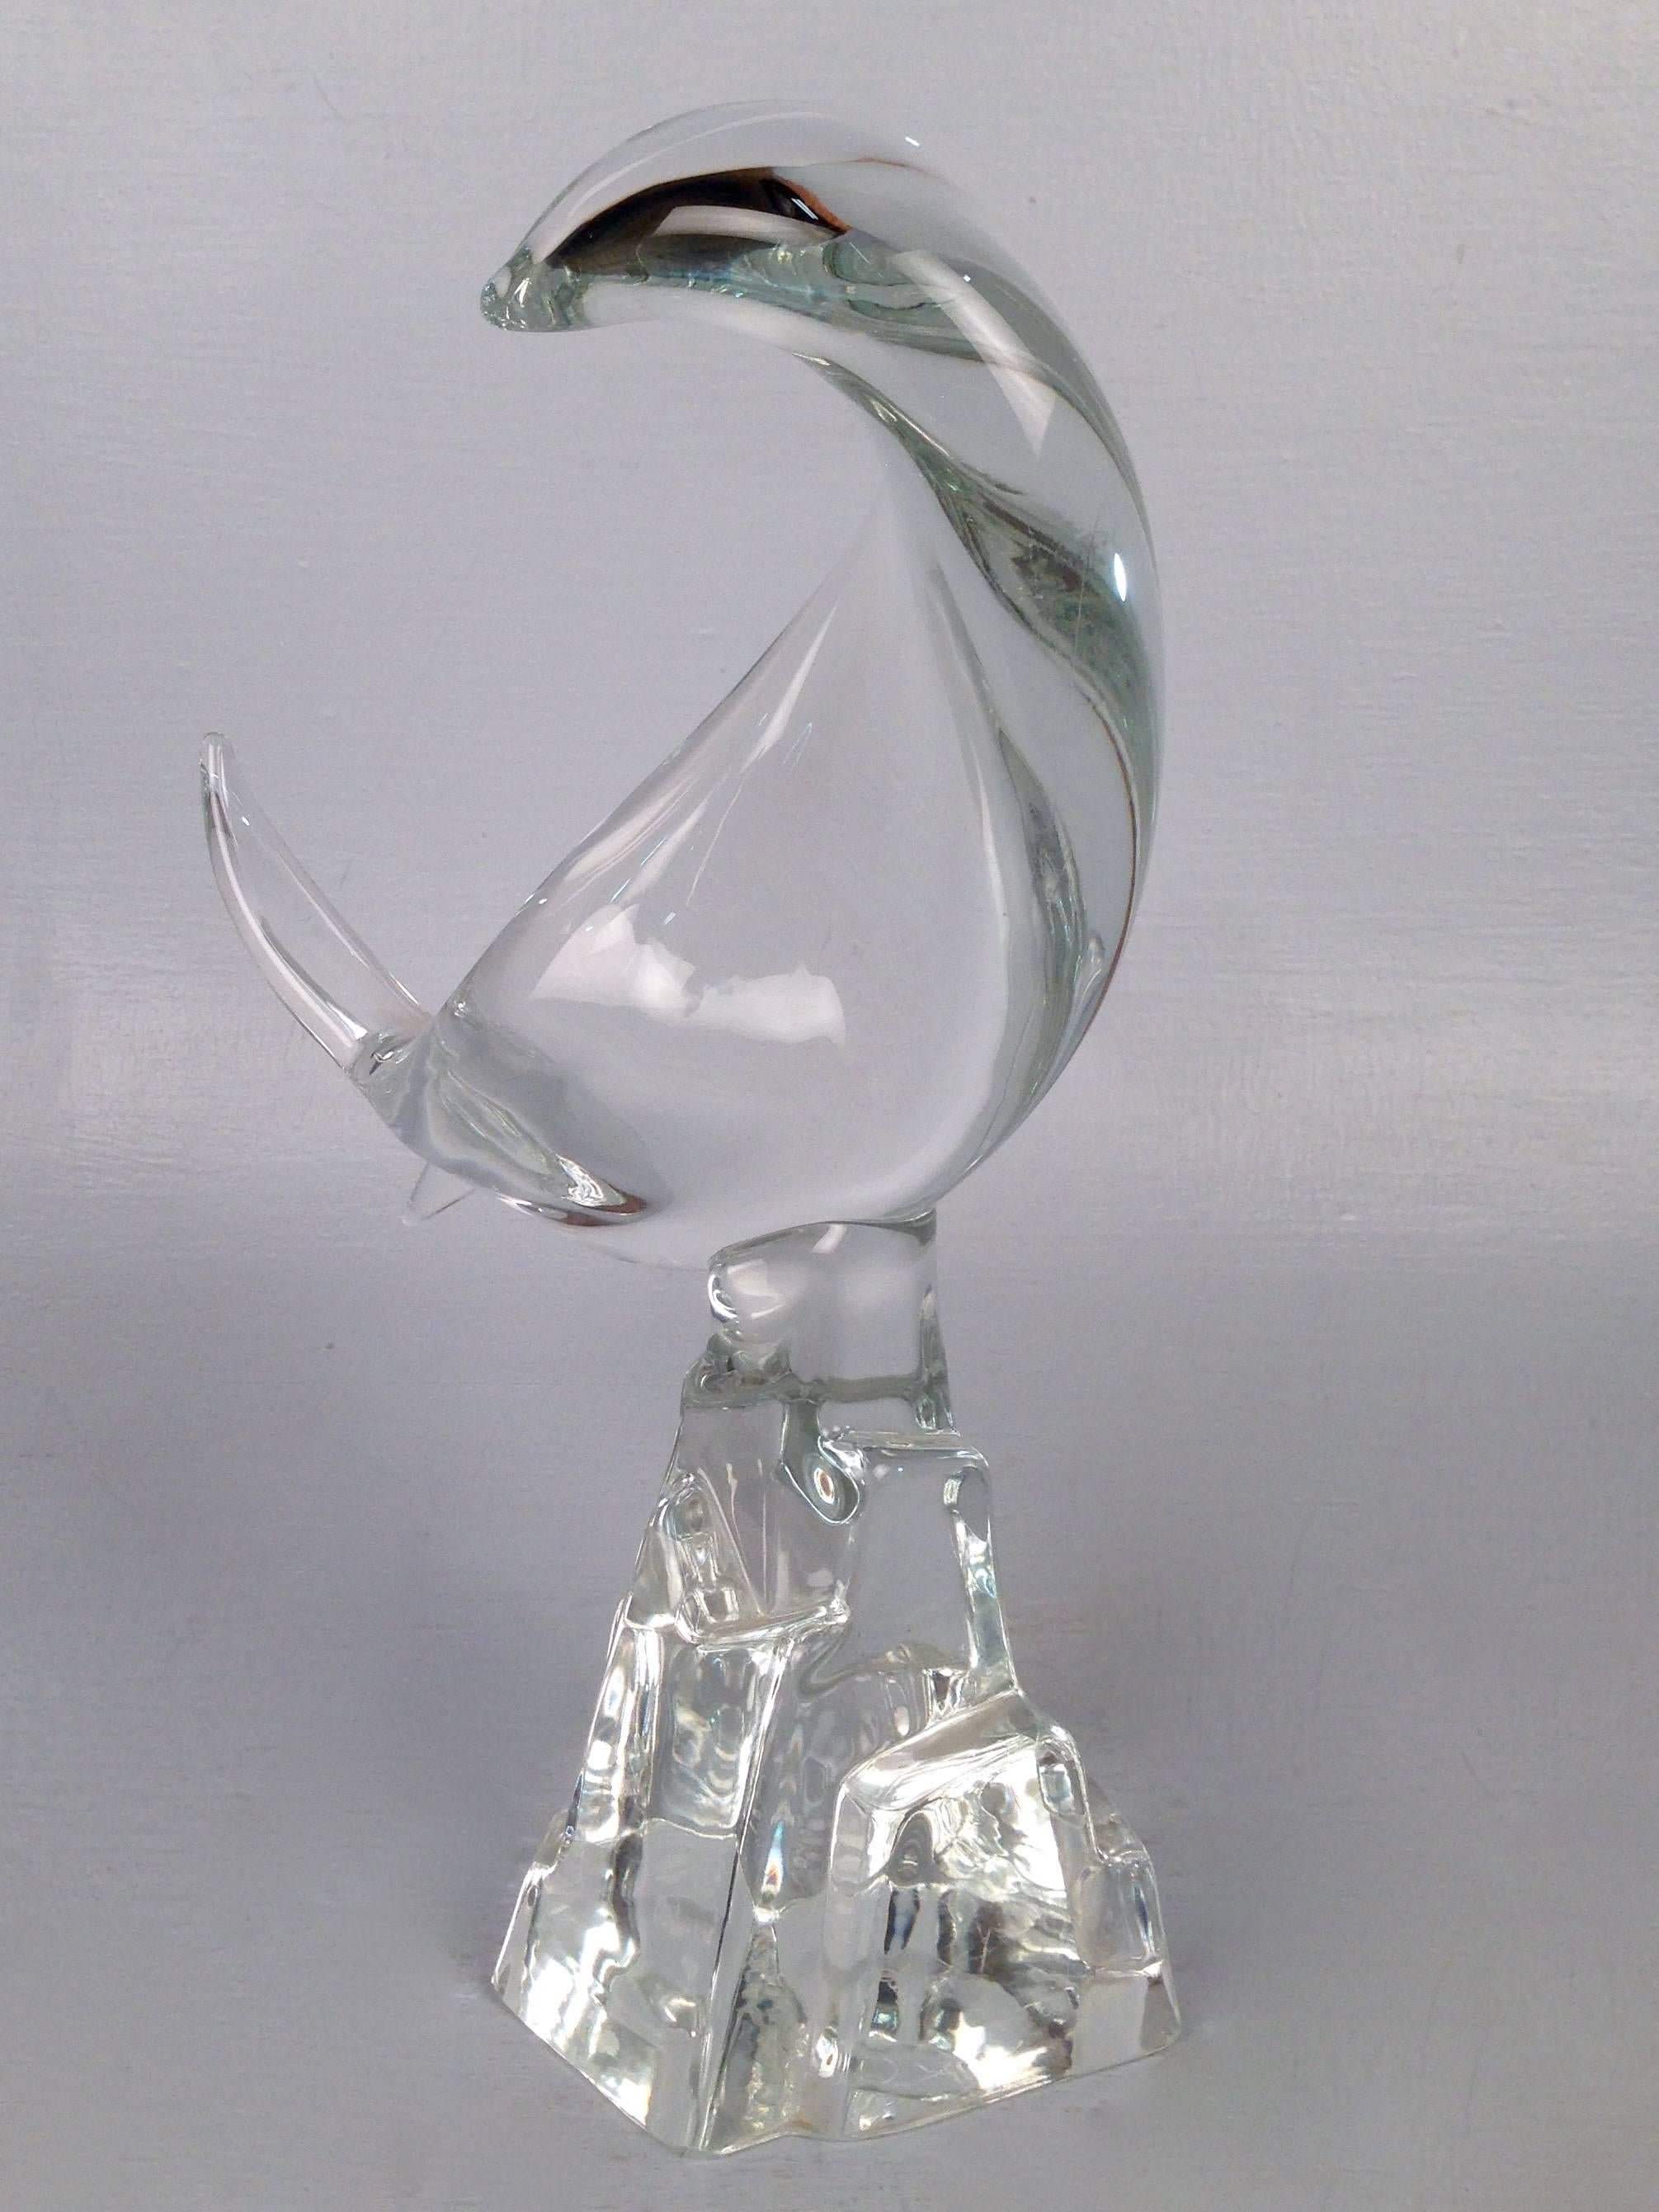 Une sculpture abstraite en verre de Murano représentant un poisson par Licio Zanetti pour Zanetti Vetreria Artistica. Le poisson en verre transparent est tordu comme s'il sautait dans les airs et monté sur un socle intégral en pierre stylisée.